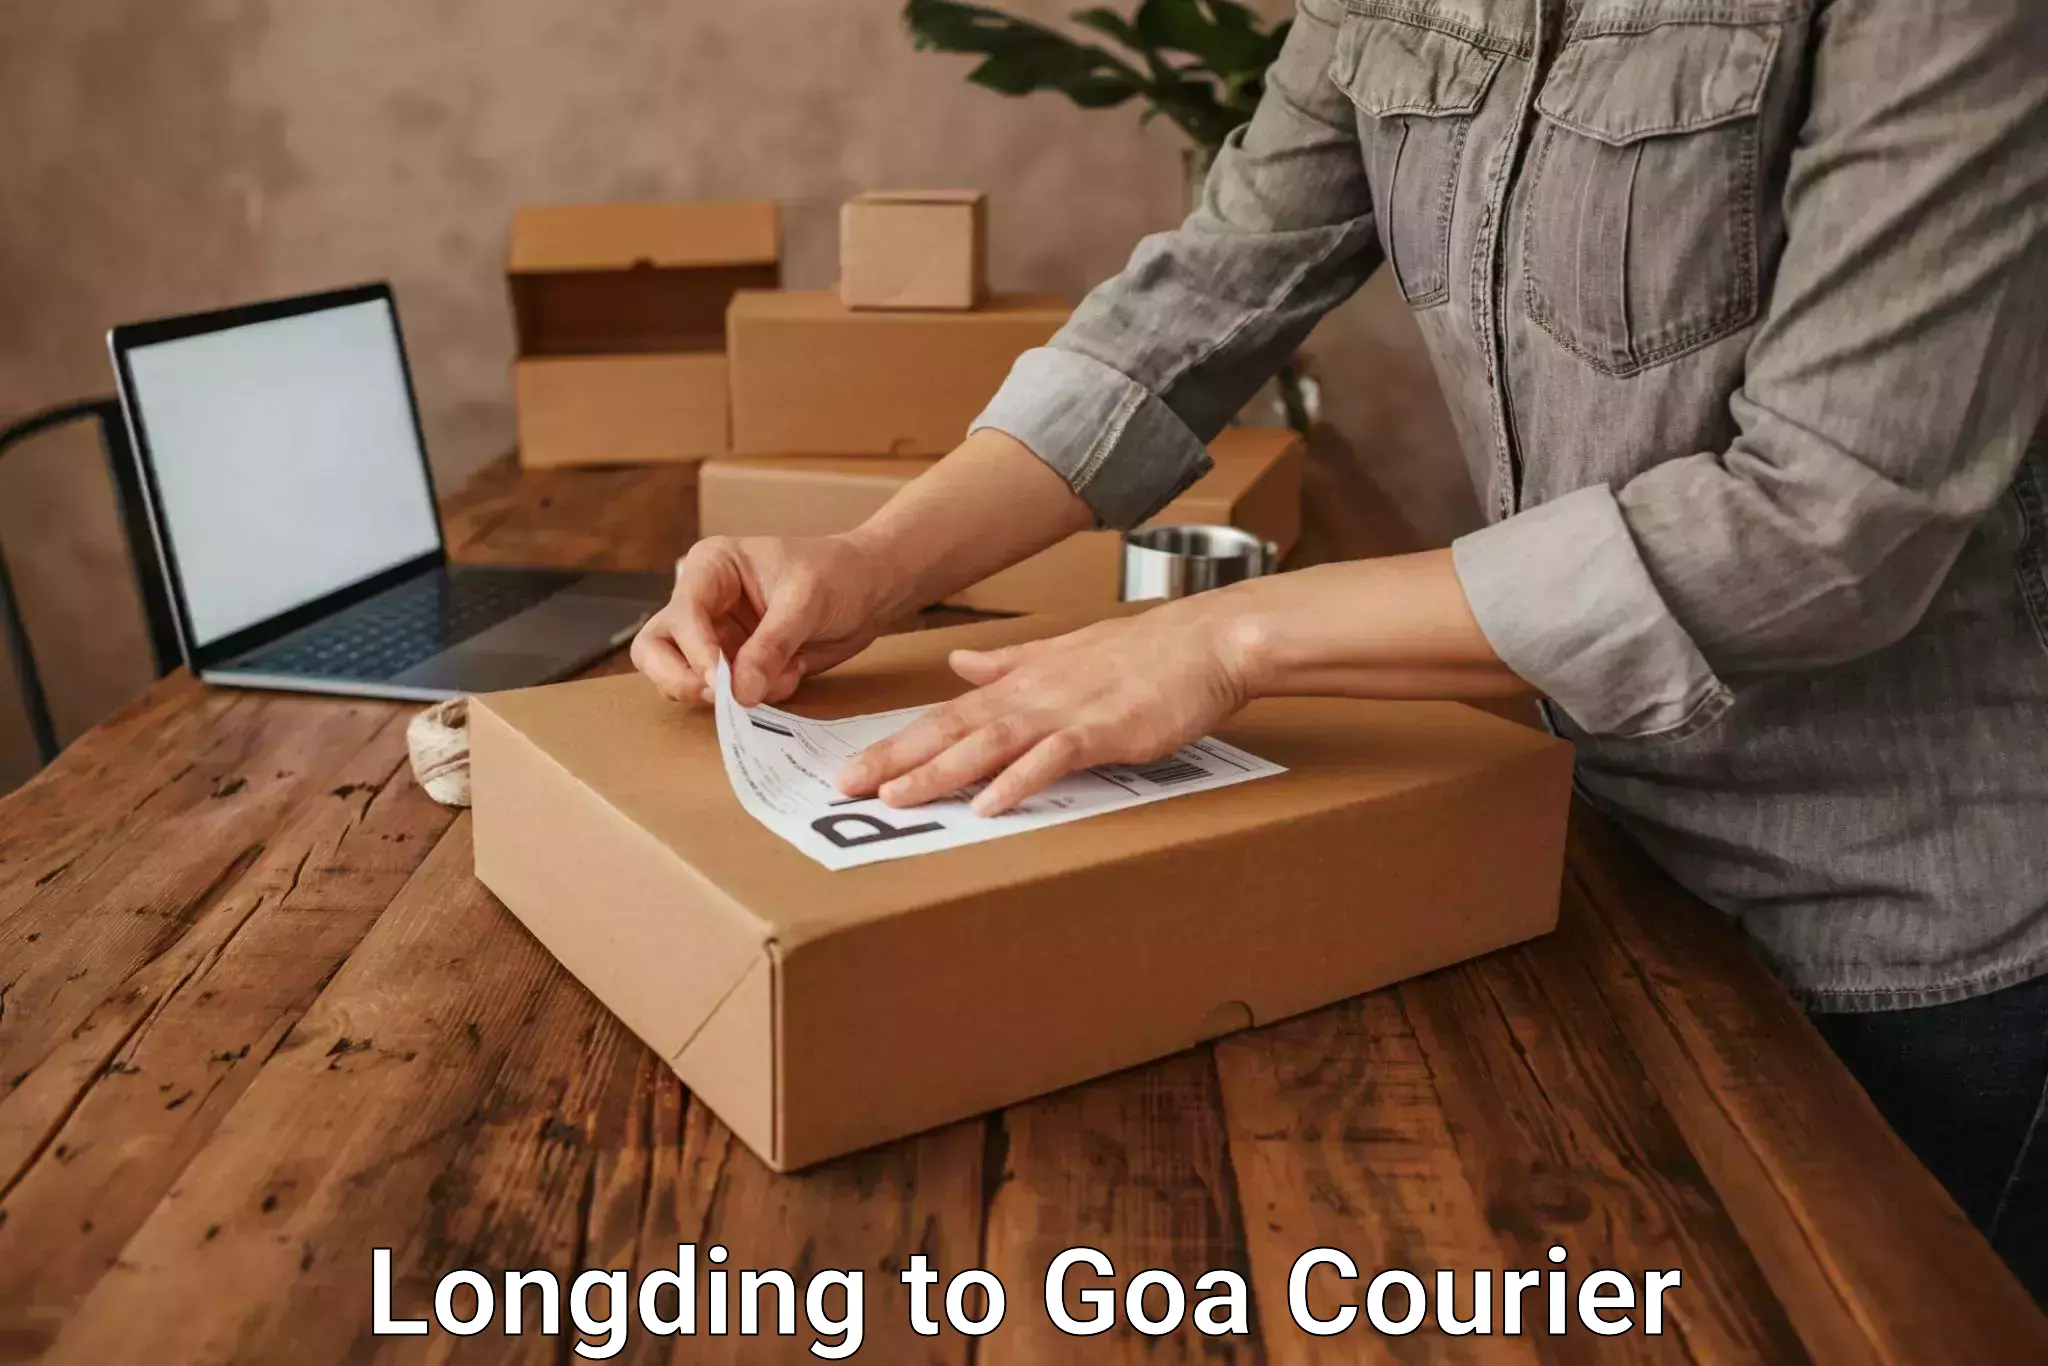 Courier service comparison Longding to Vasco da Gama